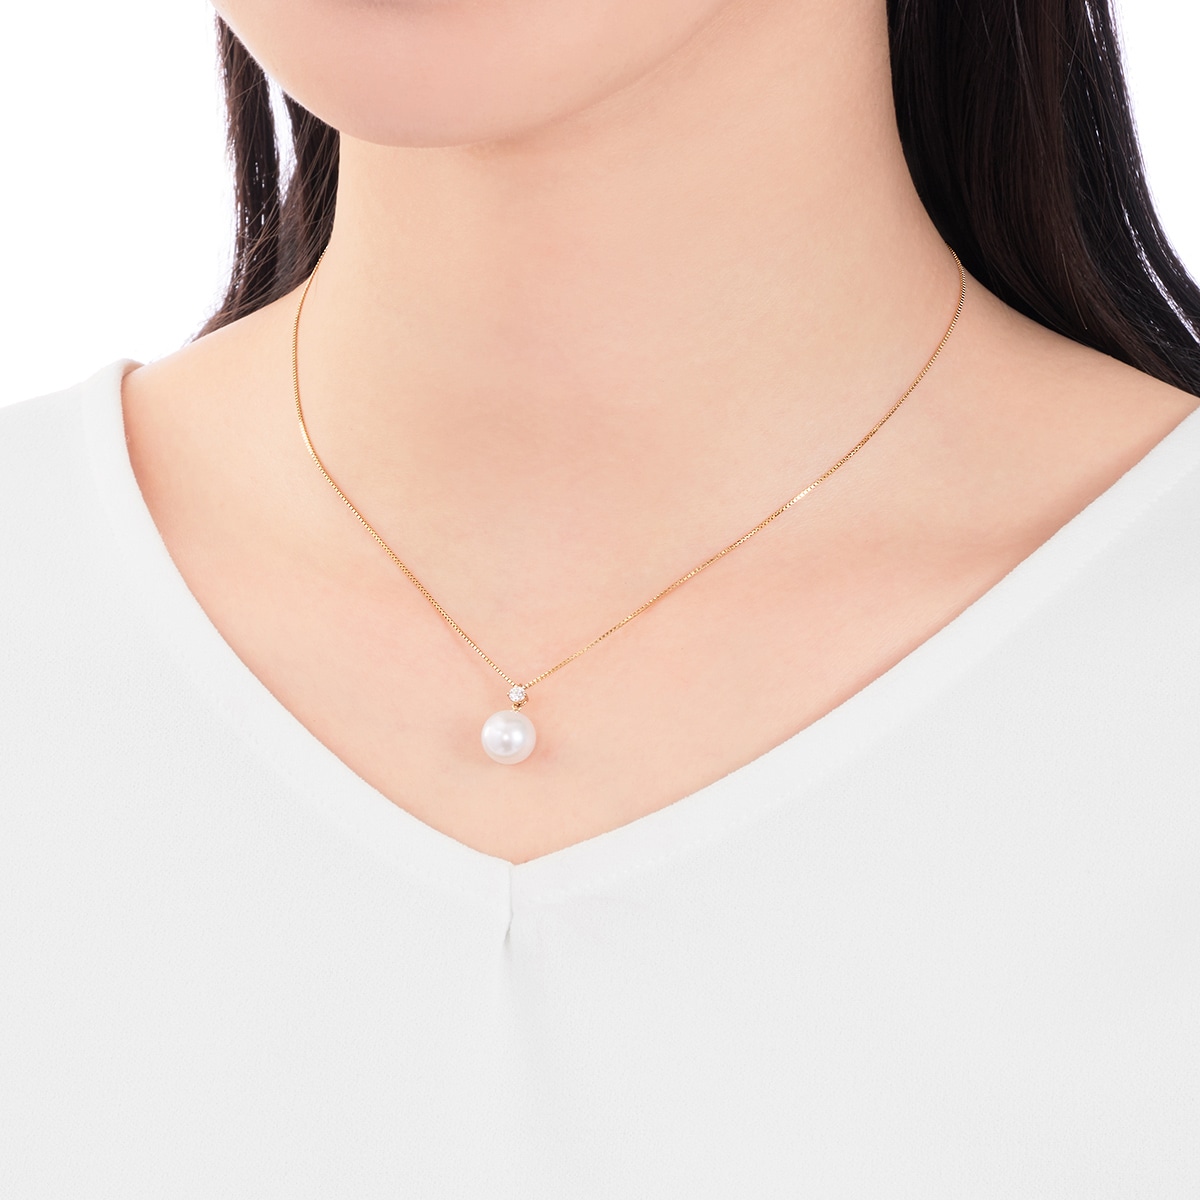 K18イエローゴールドアコヤ真珠ネックレス（9mm）: ペンダント・ペンダントネックレス|TSUTSUMIオンラインショップ【JEWELRY